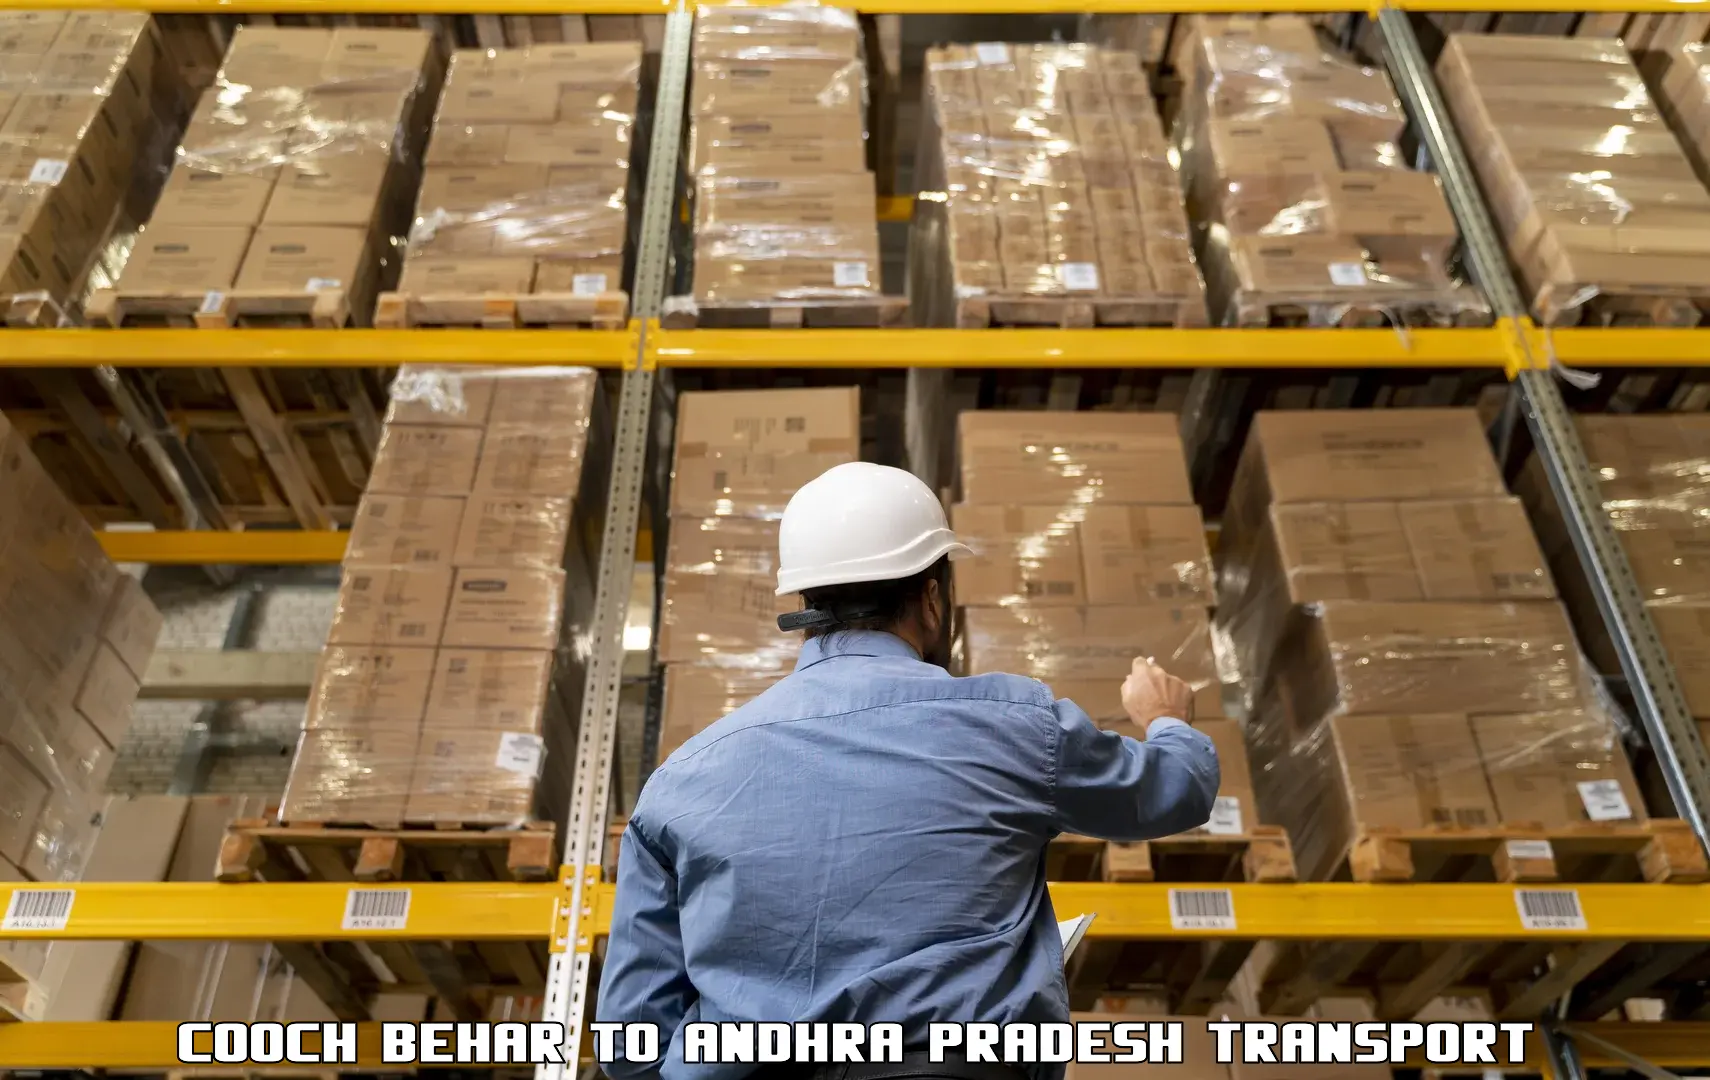 International cargo transportation services Cooch Behar to Narsapur